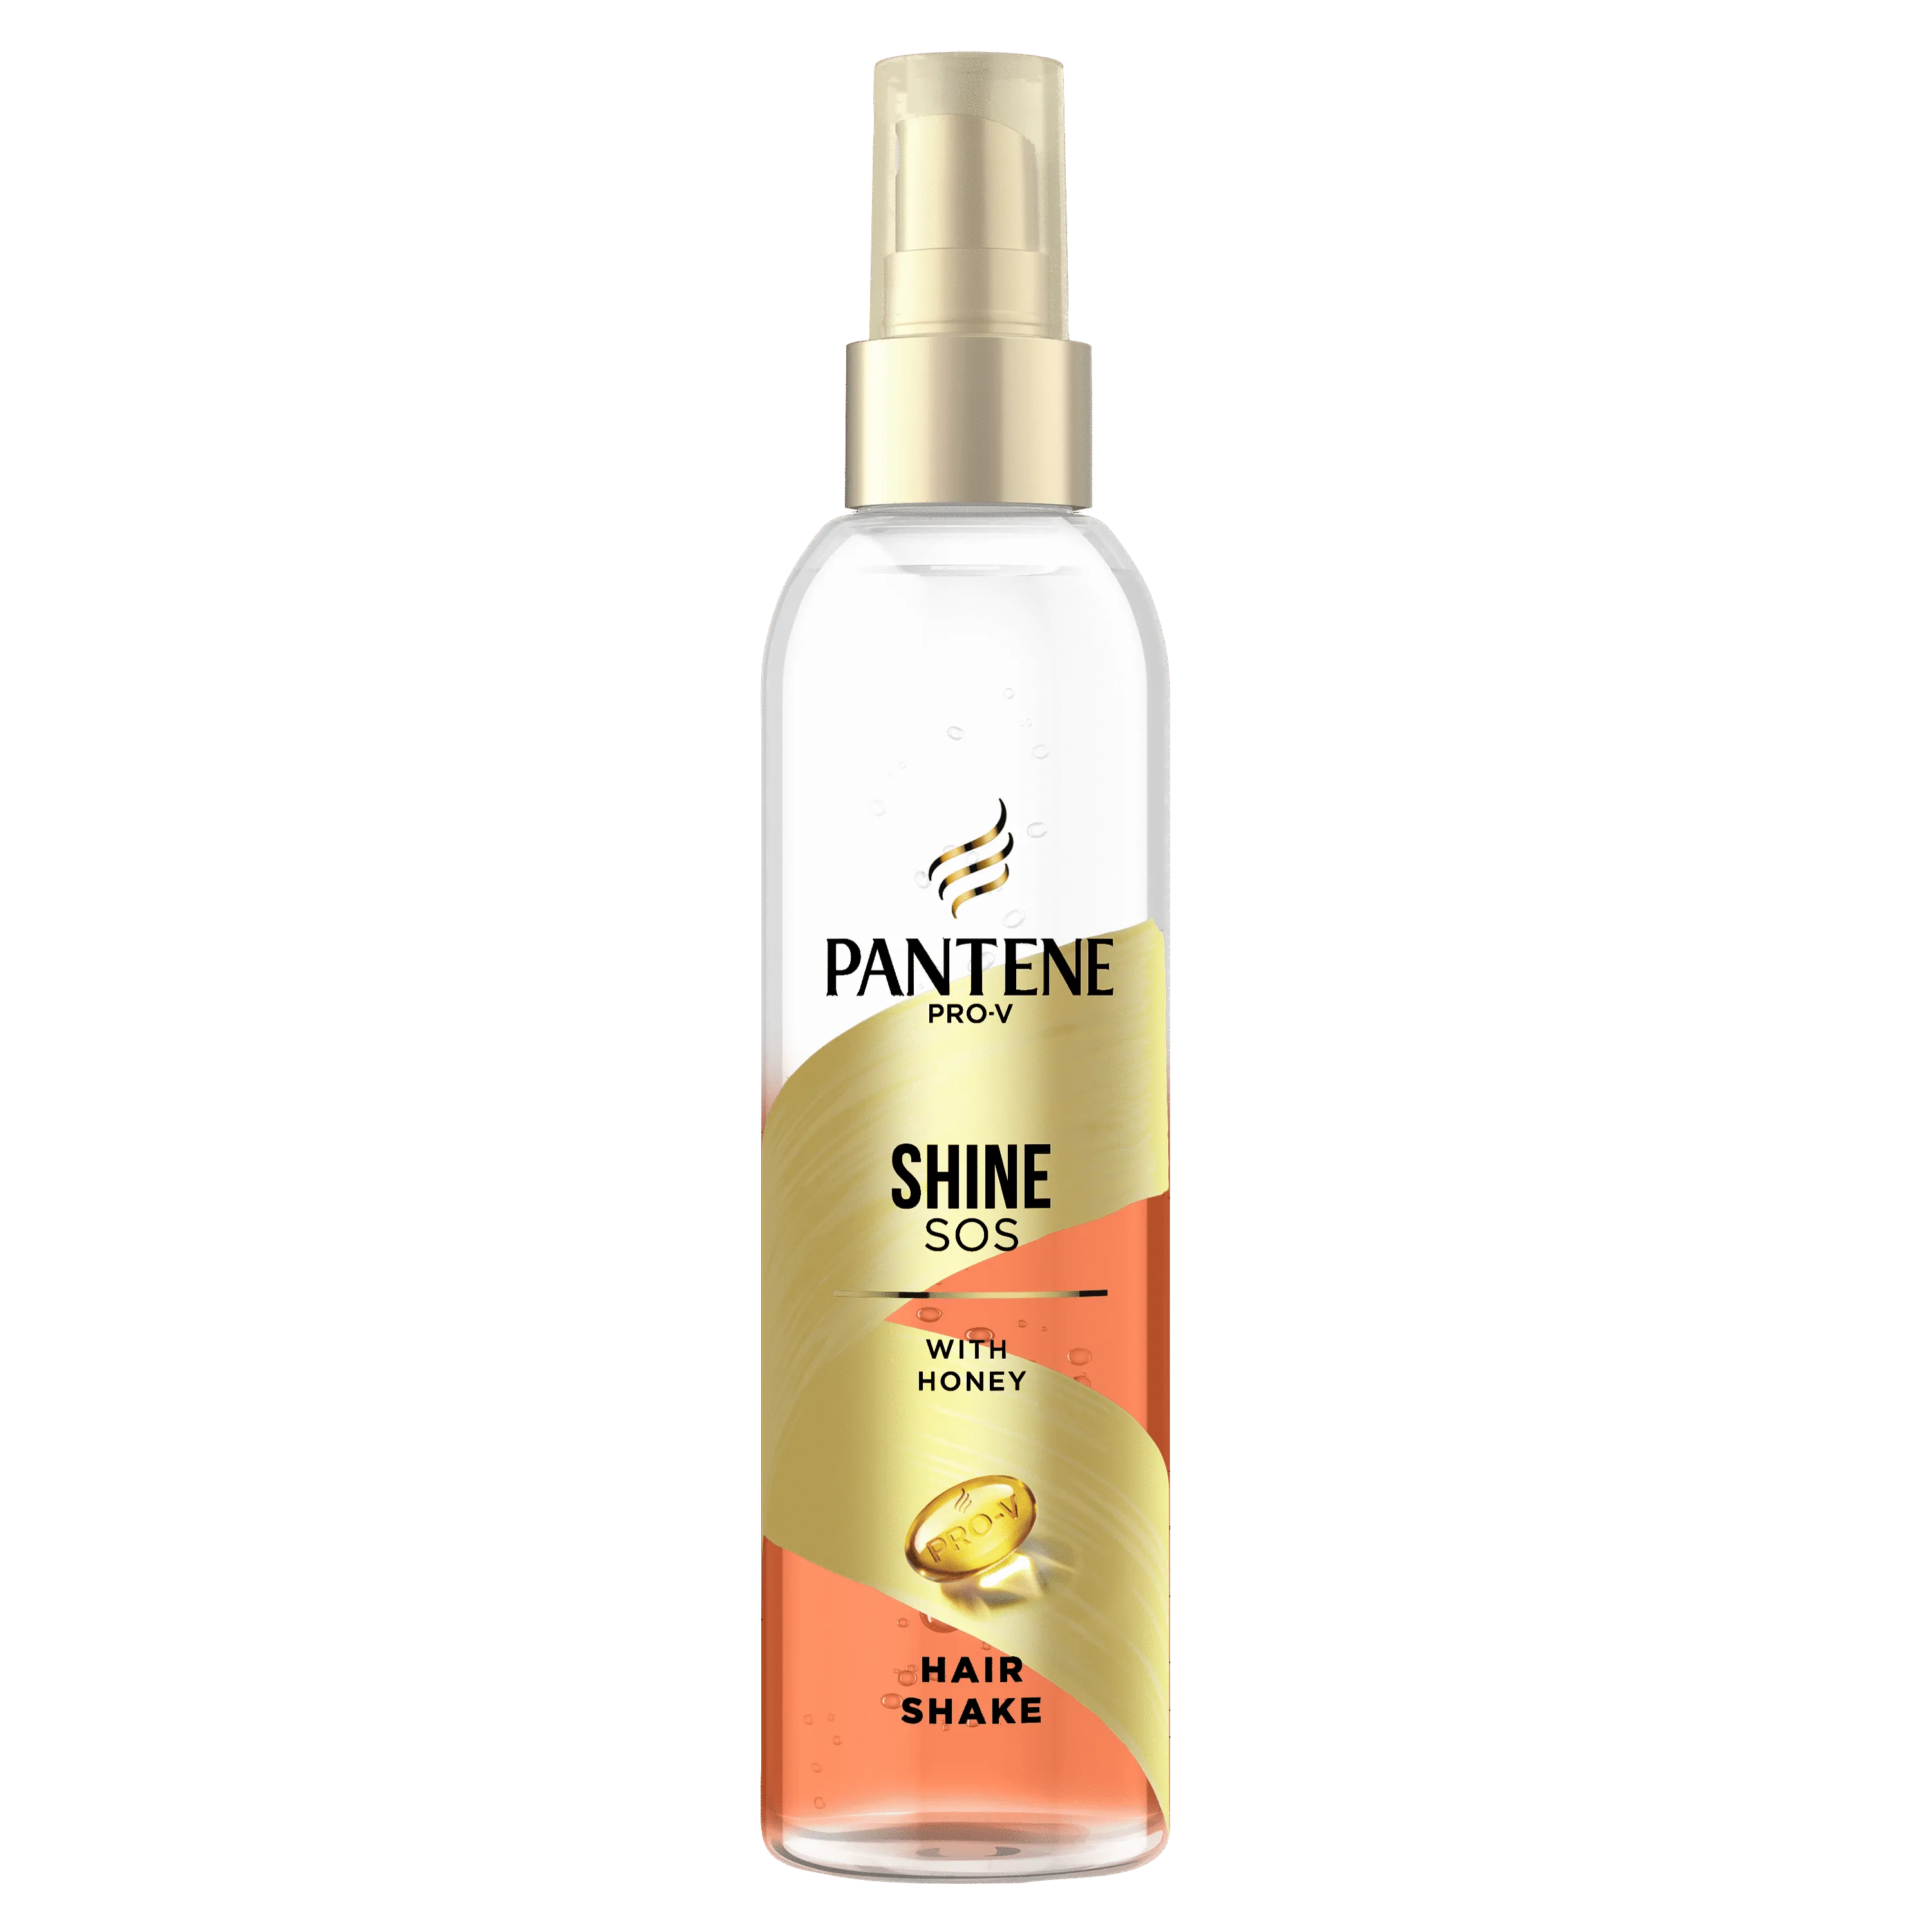 Pantene Pro-V Shine SOS odżywka w srayu bez spłukiwania z miodem, 150 ml